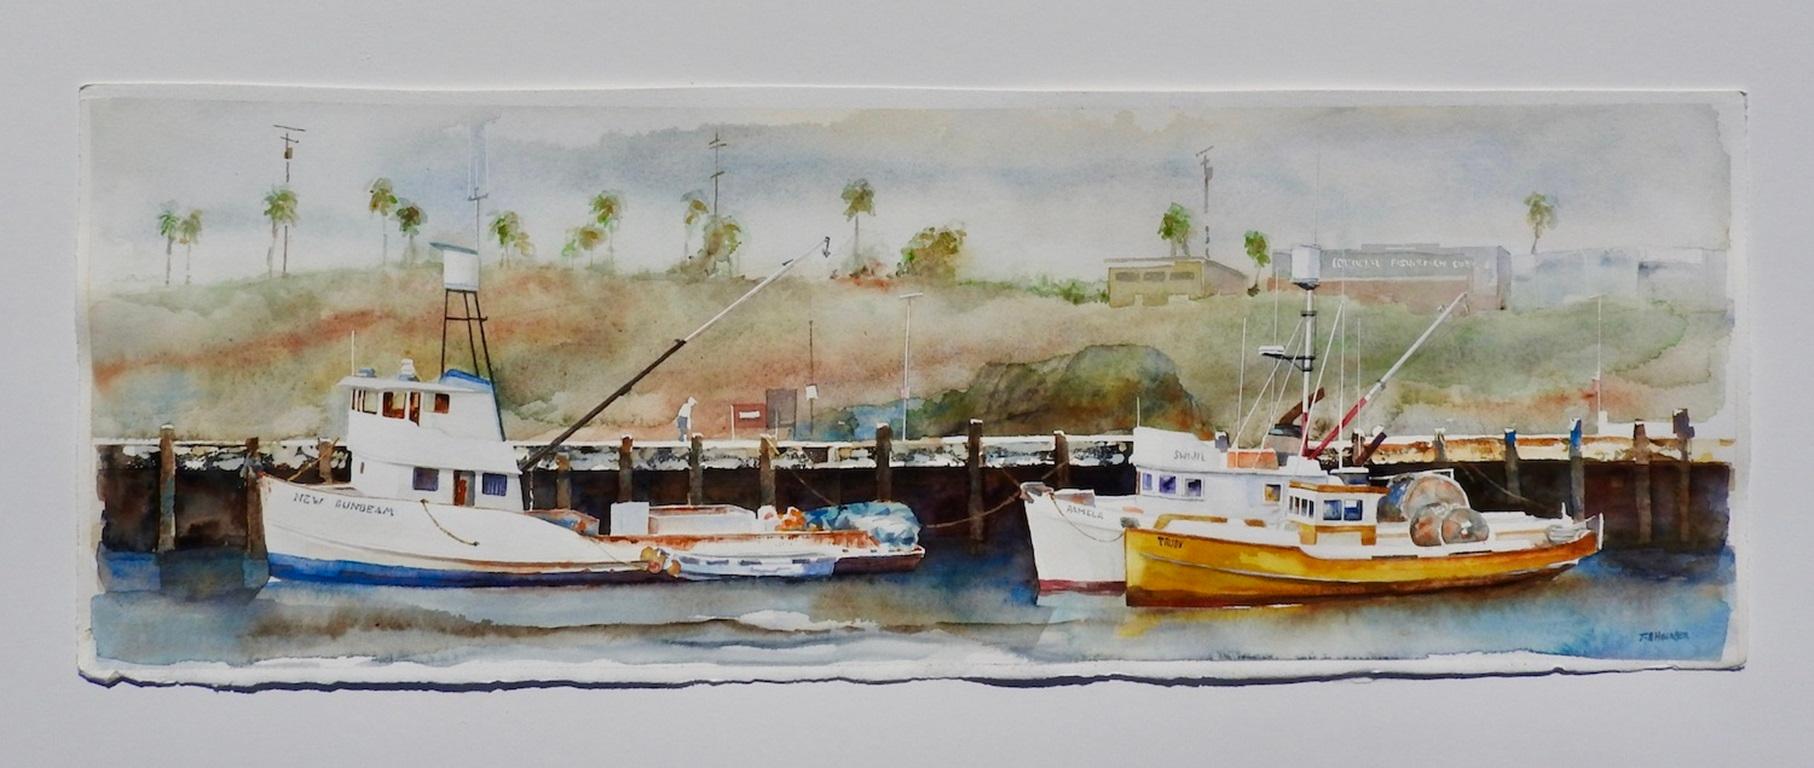 <p>Kommentare des Künstlers<br>Die Fischerboote in San Pedro sind reich an historischen Farben. Sie werden von Generation zu Generation weitergegeben. Das Gemälde lenkt die Aufmerksamkeit auf den Vordergrund und gibt gleichzeitig den Blick auf die